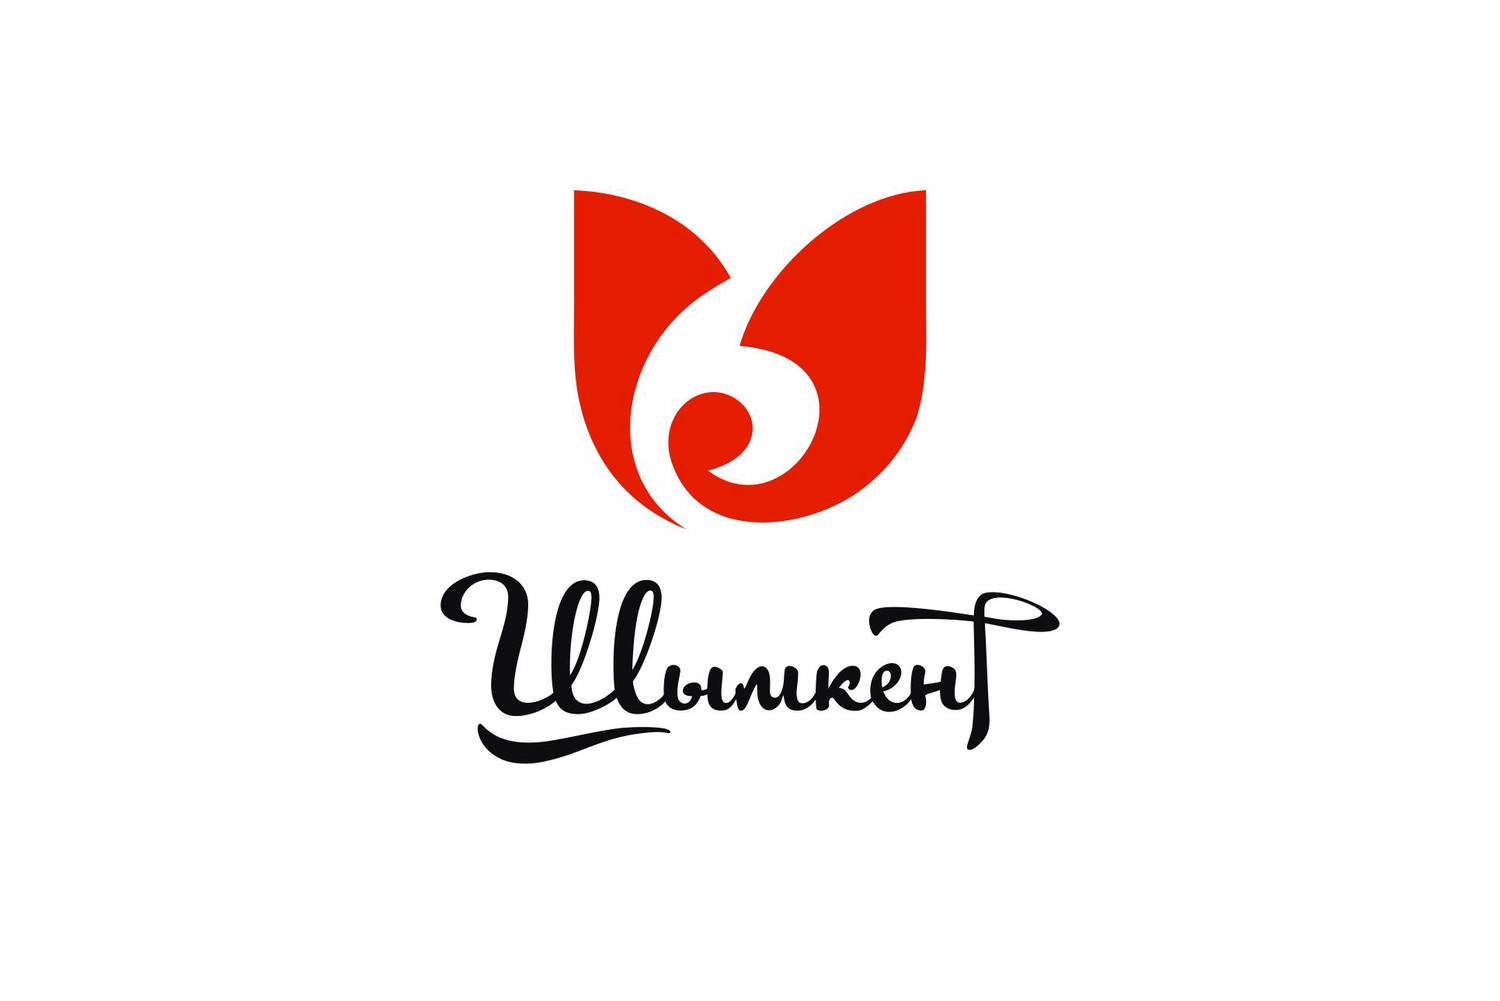 Логотип города Шымкента. Дизайн (Часть 2)